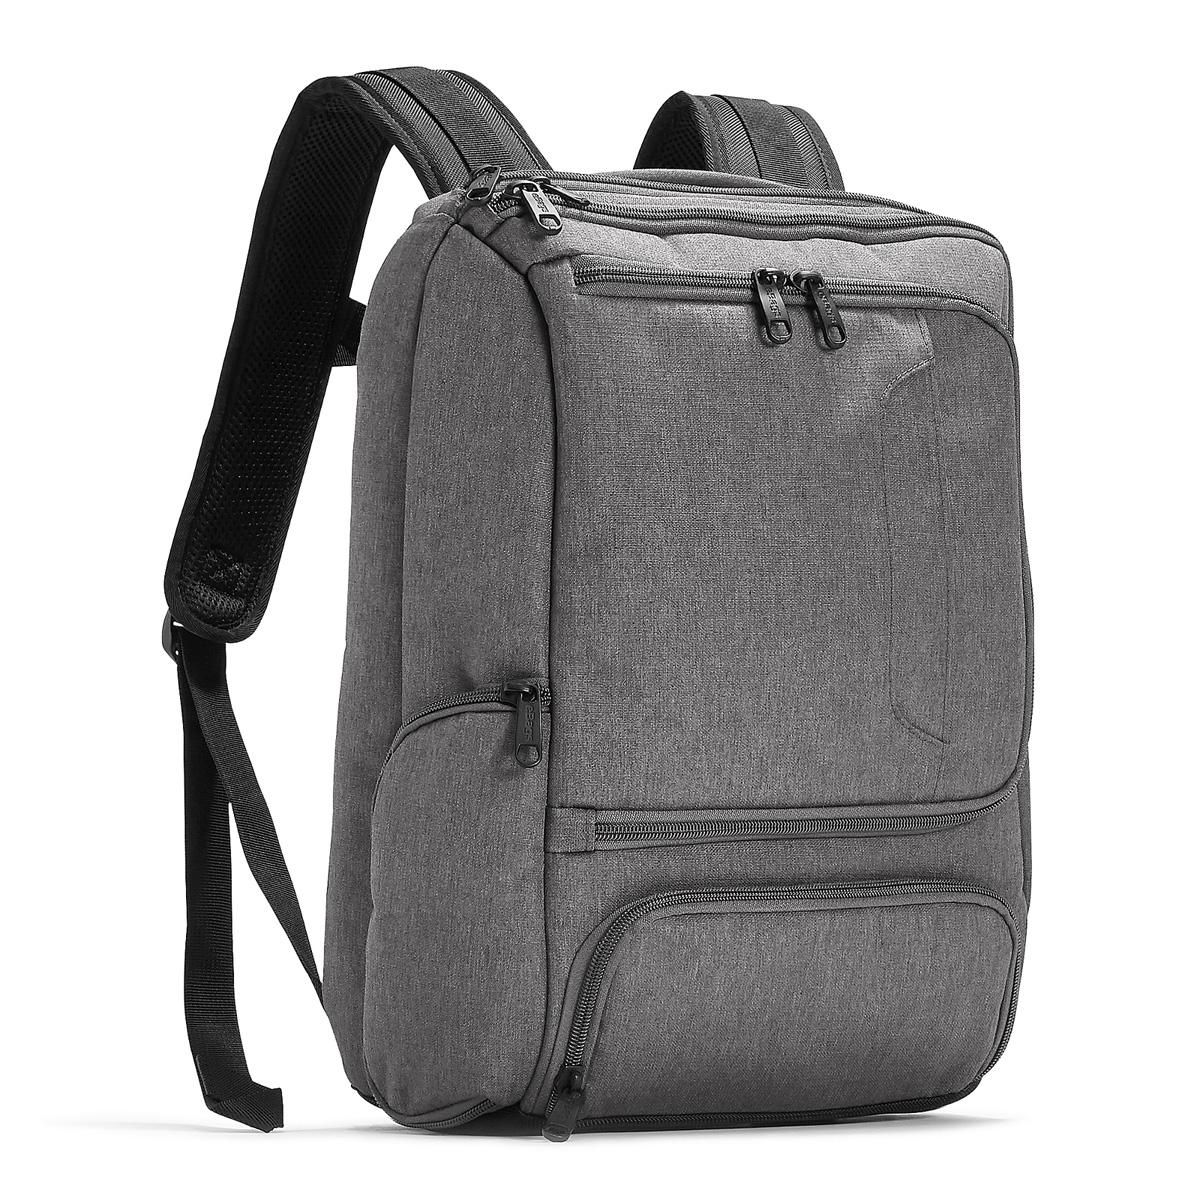 eBags Pro Slim Jr Laptop Backpack for $46.80 Shipped